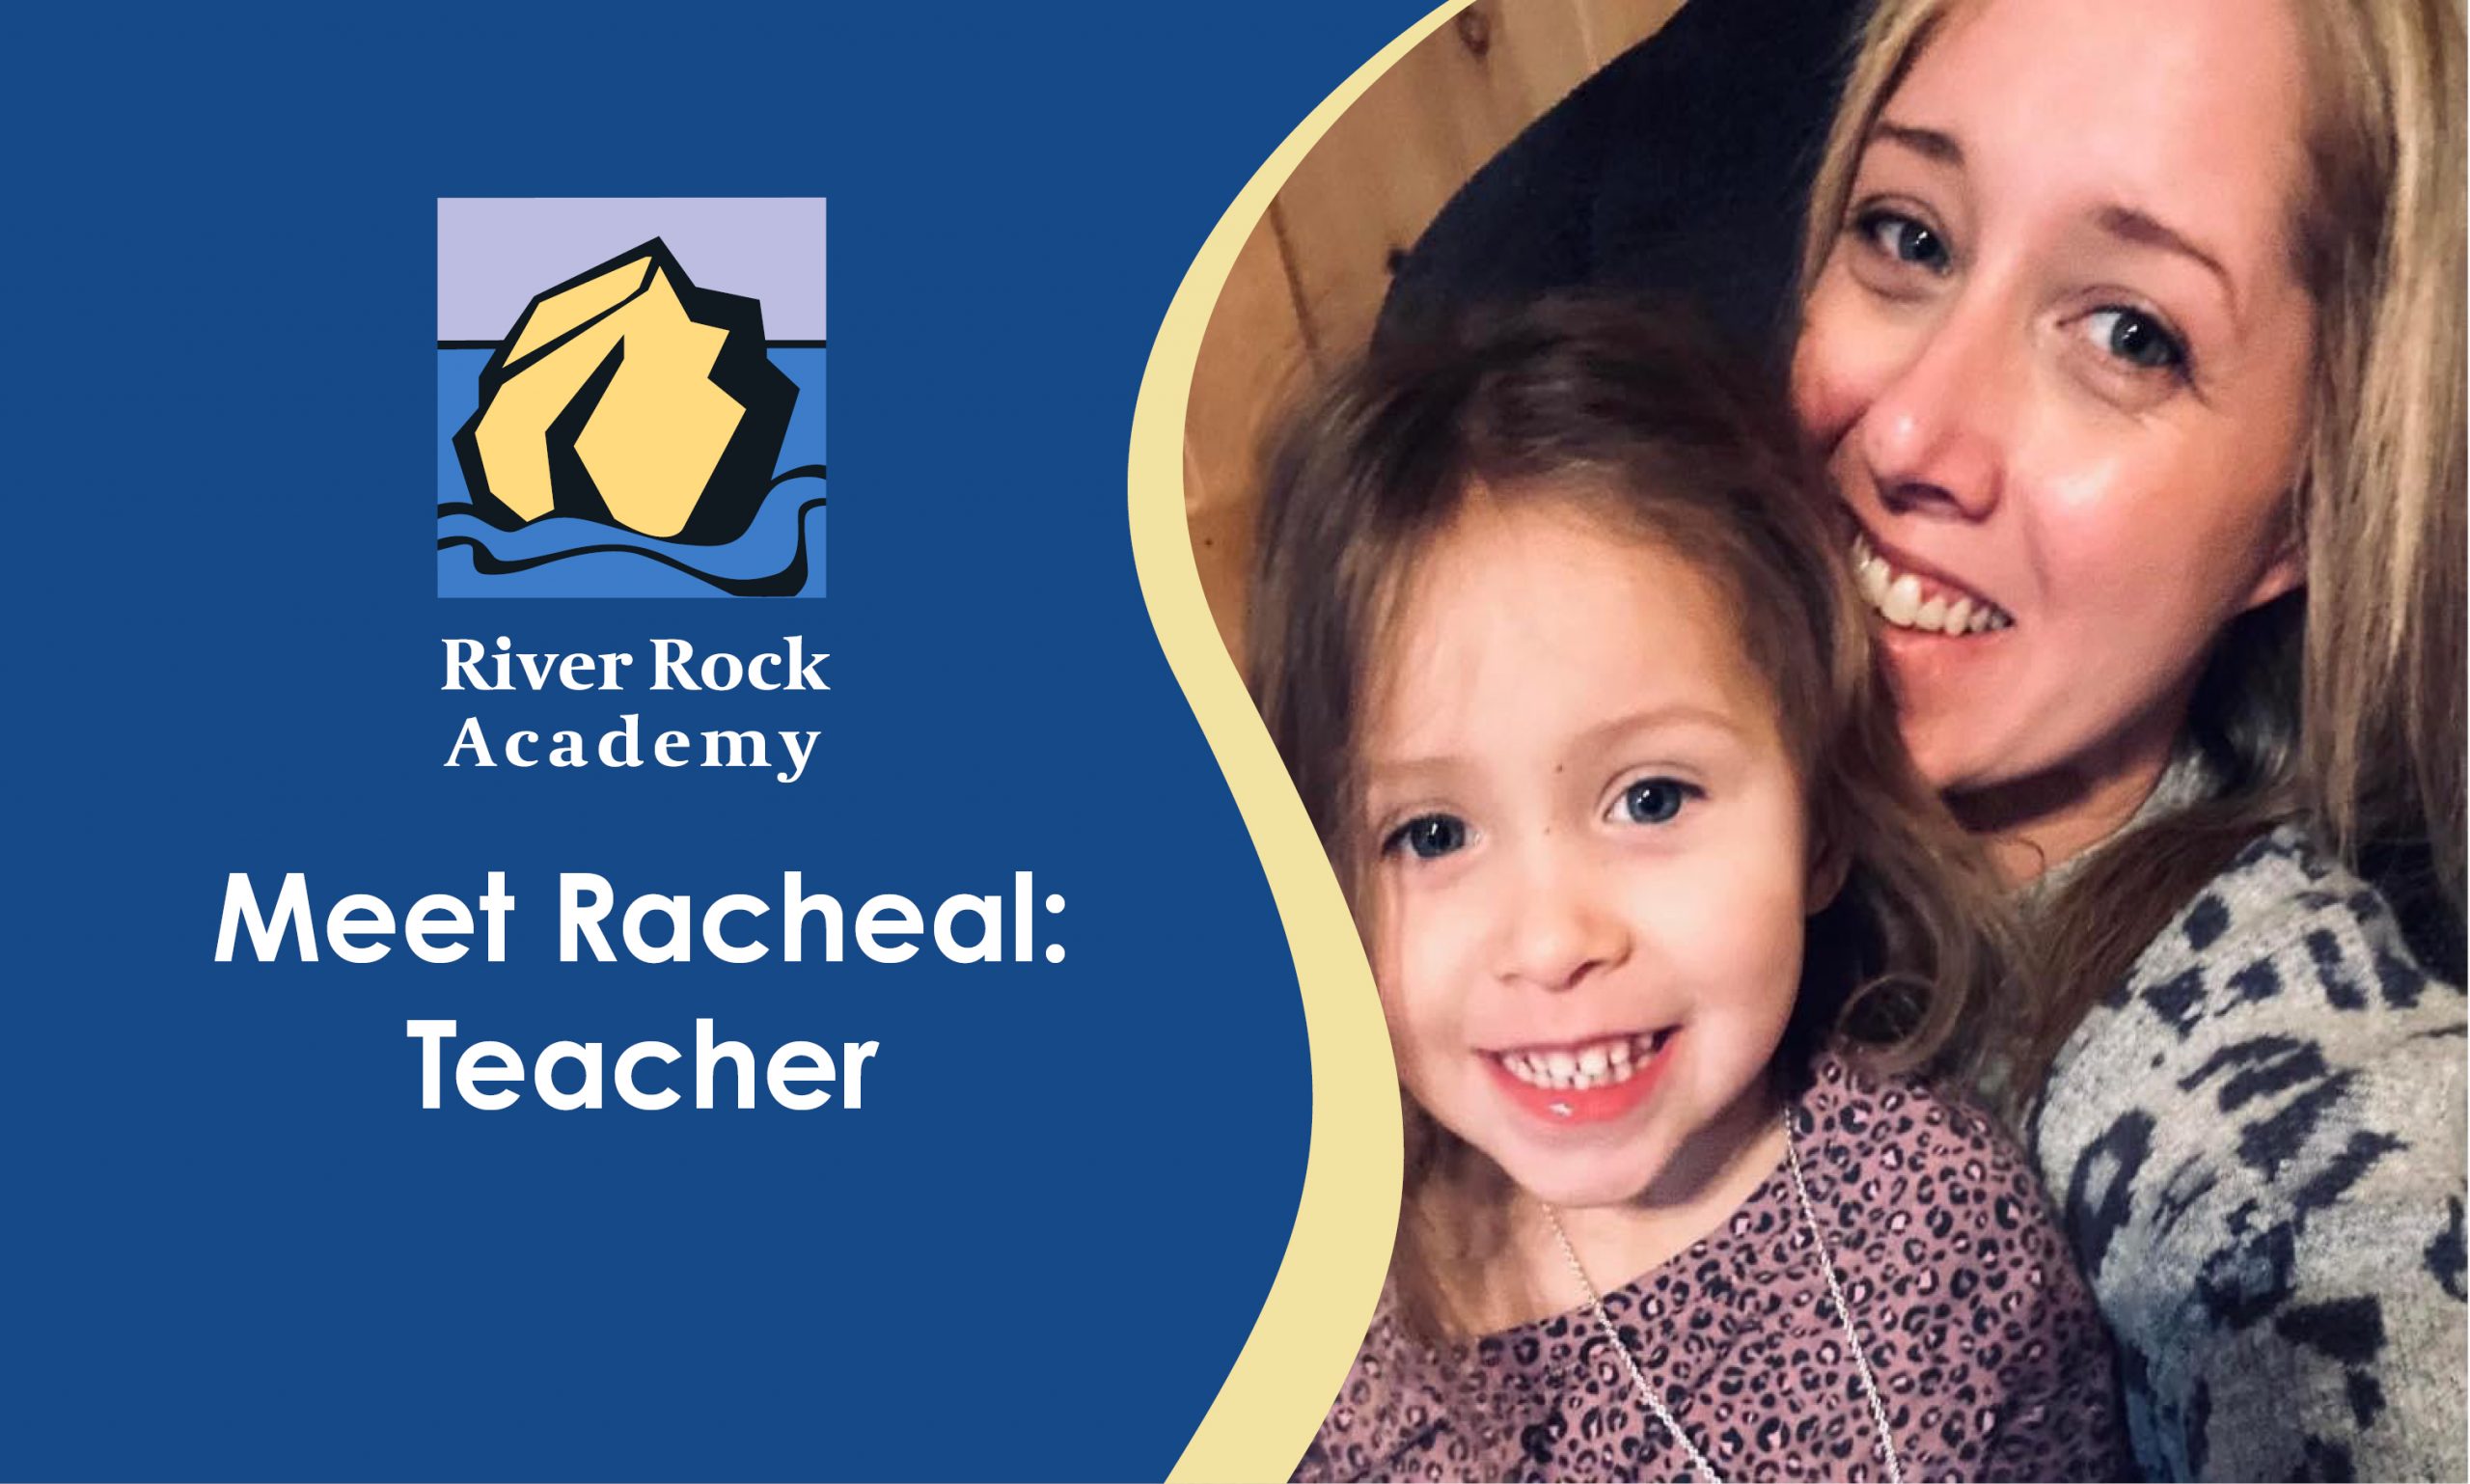 Meet Racheal: Teacher